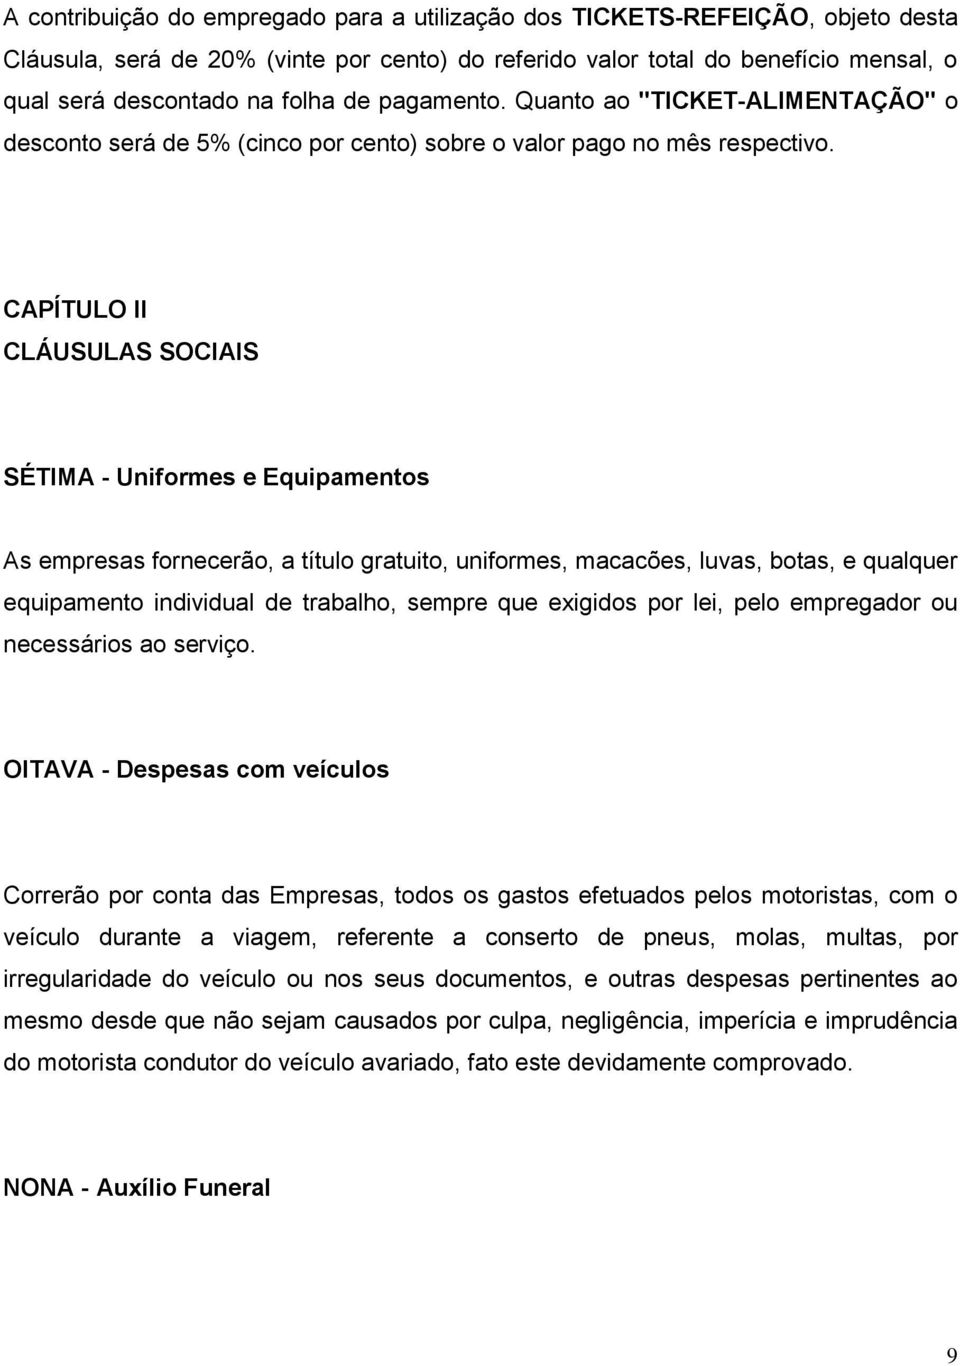 CAPÍTULO II CLÁUSULAS SOCIAIS SÉTIMA - Uniformes e Equipamentos As empresas fornecerão, a título gratuito, uniformes, macacões, luvas, botas, e qualquer equipamento individual de trabalho, sempre que